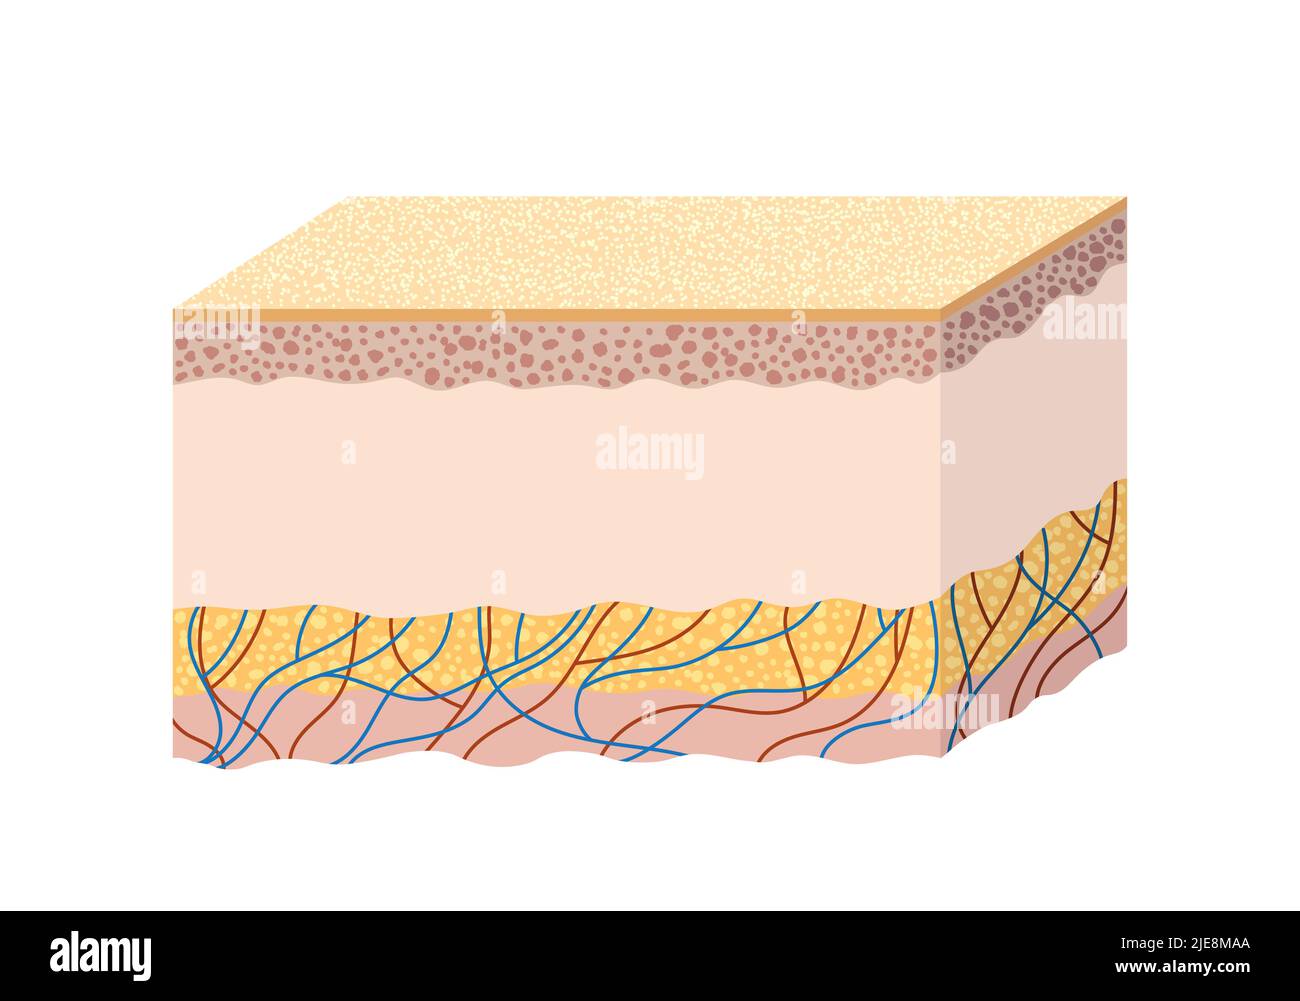 Anatomie de la structure de la peau humaine. Guide scientifique Illustration de Vecteur